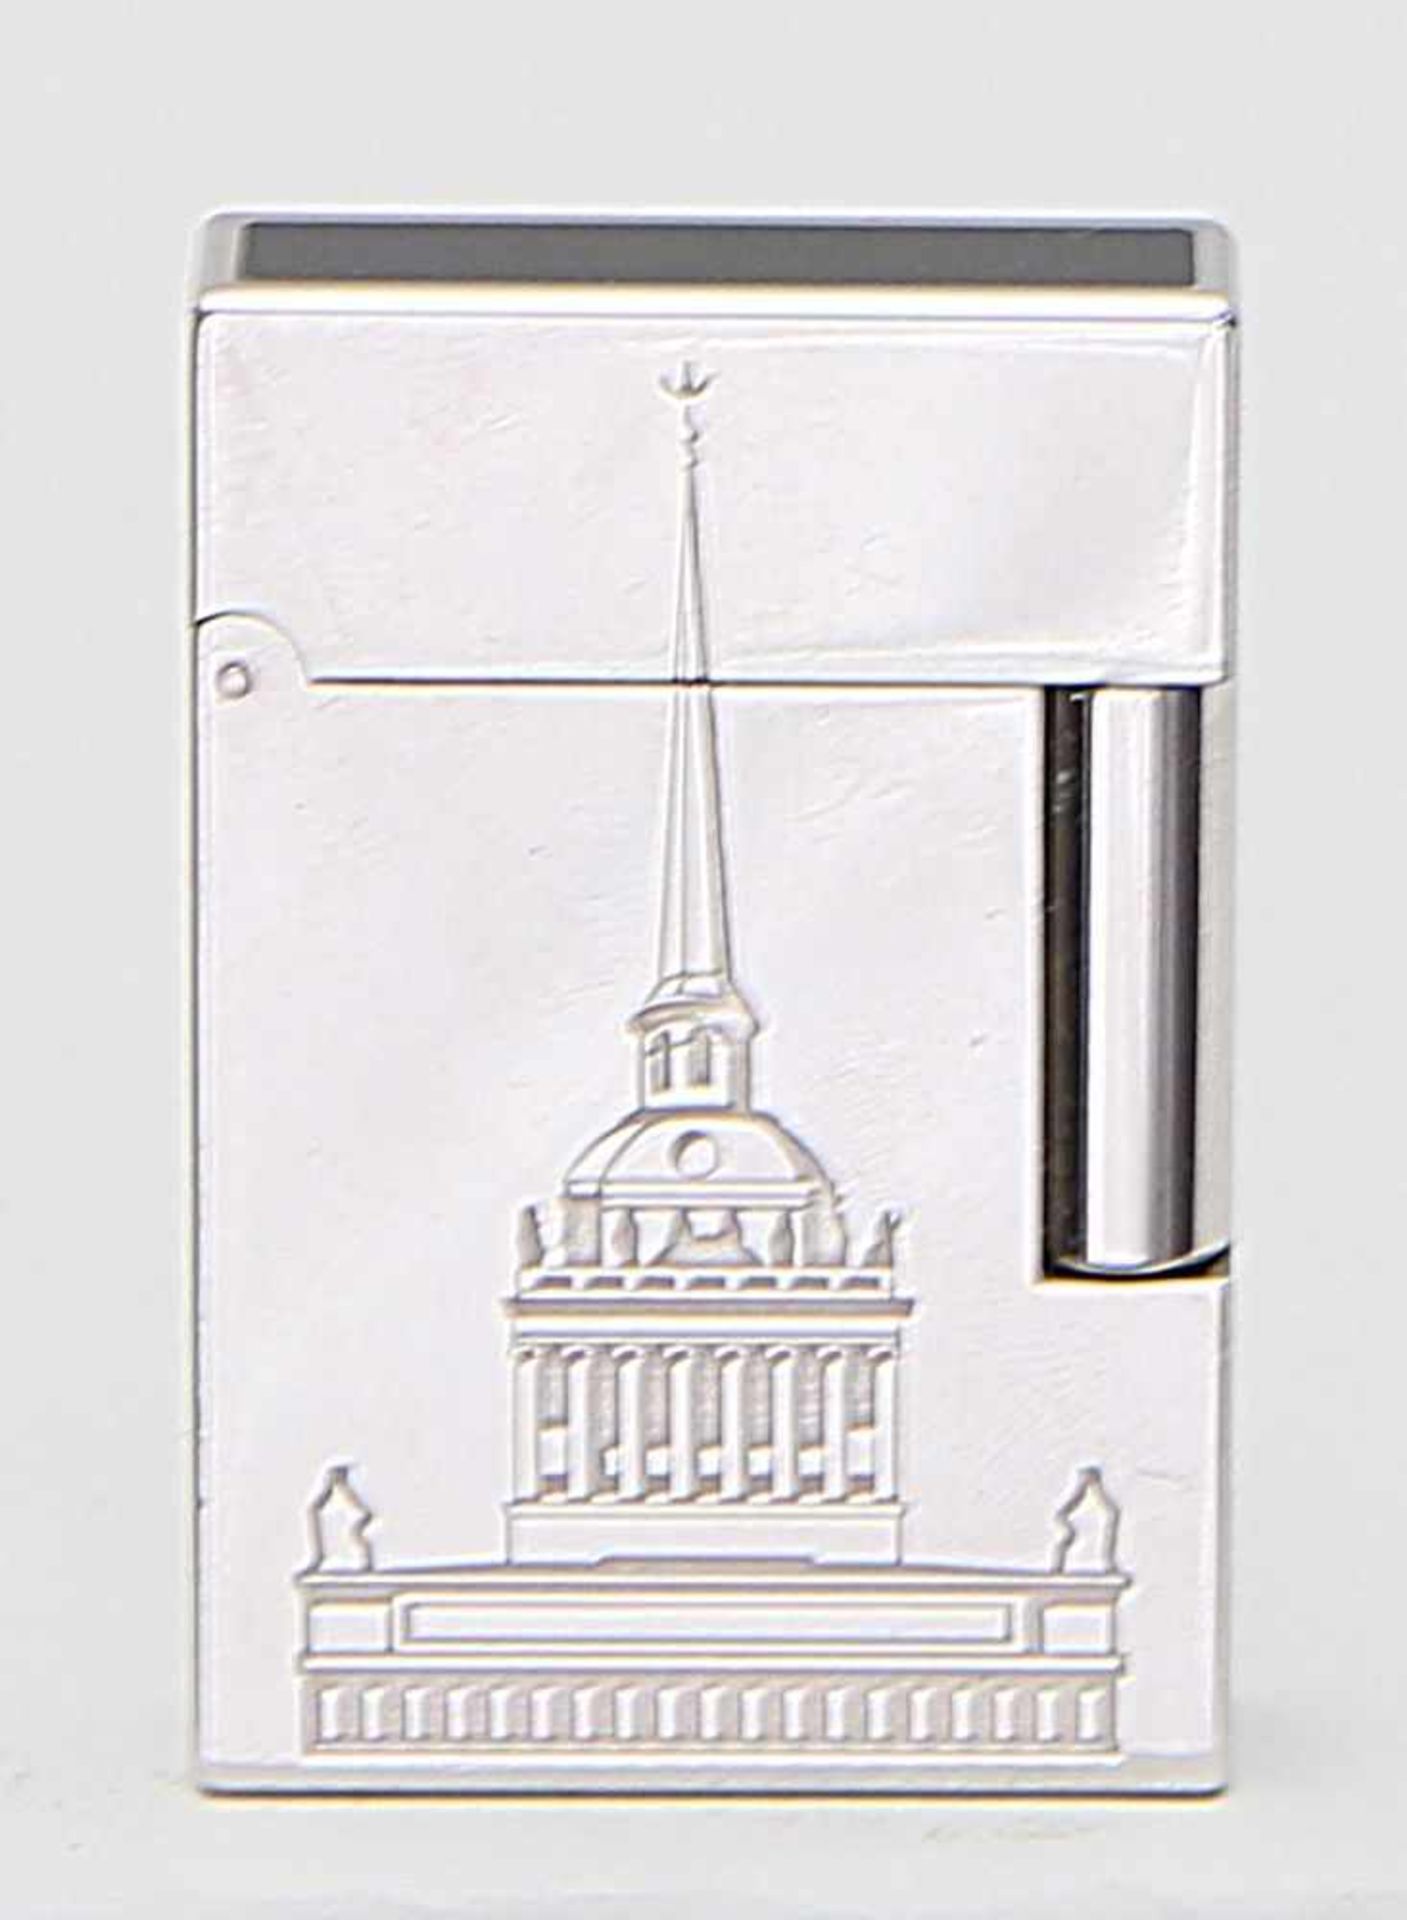 Limitiertes Feuerzeug "St. Petersburg", Dupont.Versilbert, mit Darstellung des Stadtwappens und